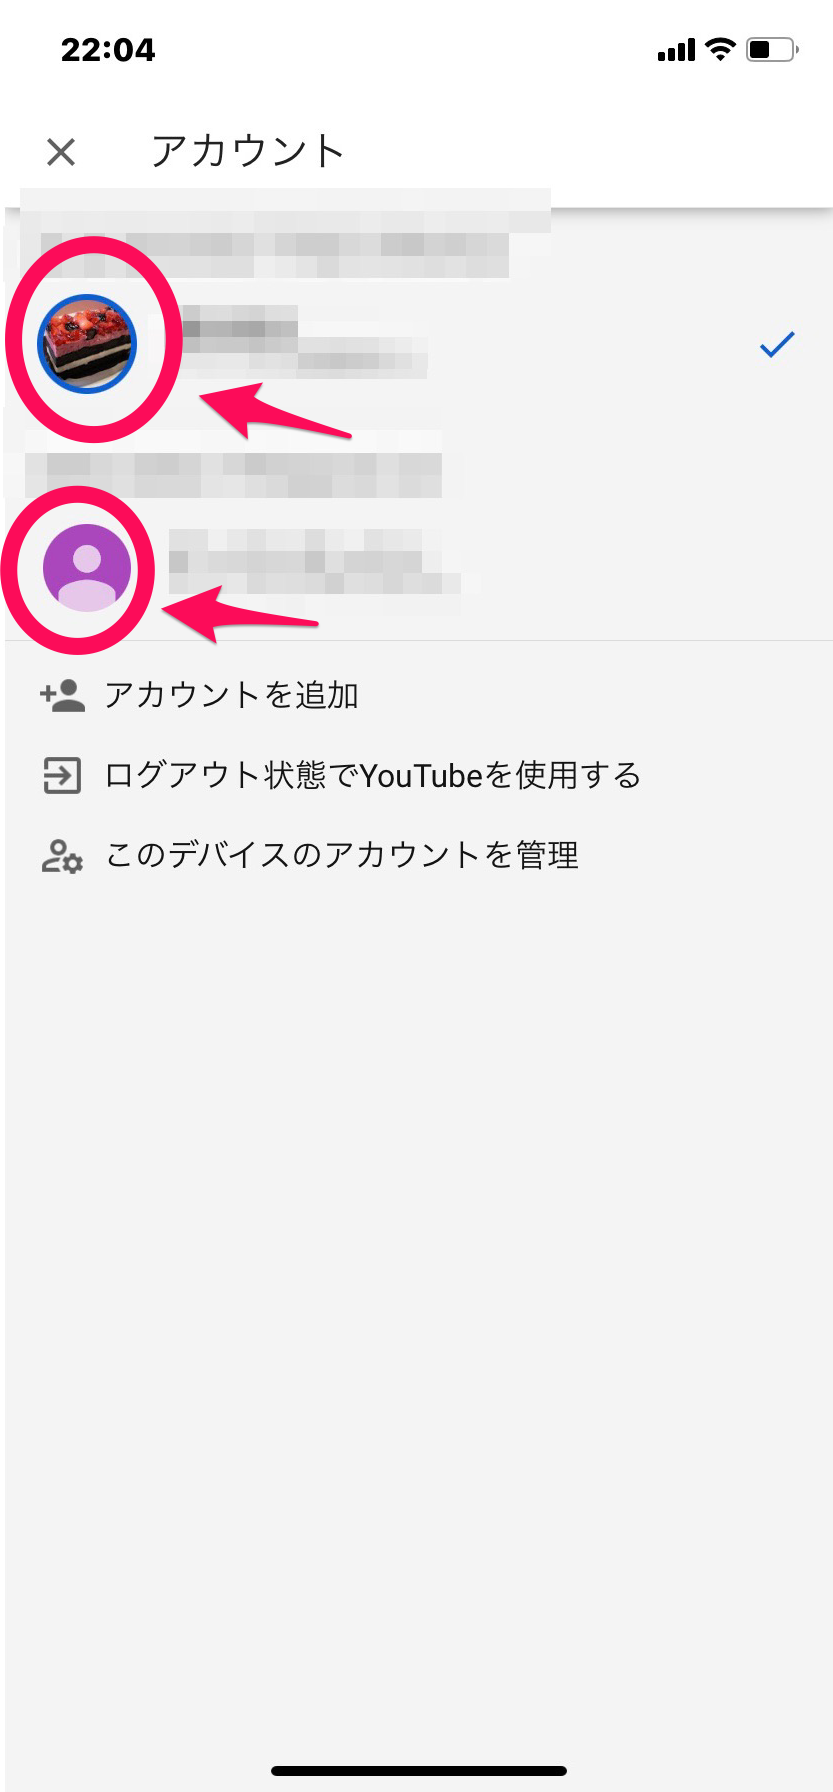 Youtube スマホ Pcでのアイコンの変え方は 注意点も Apptopi